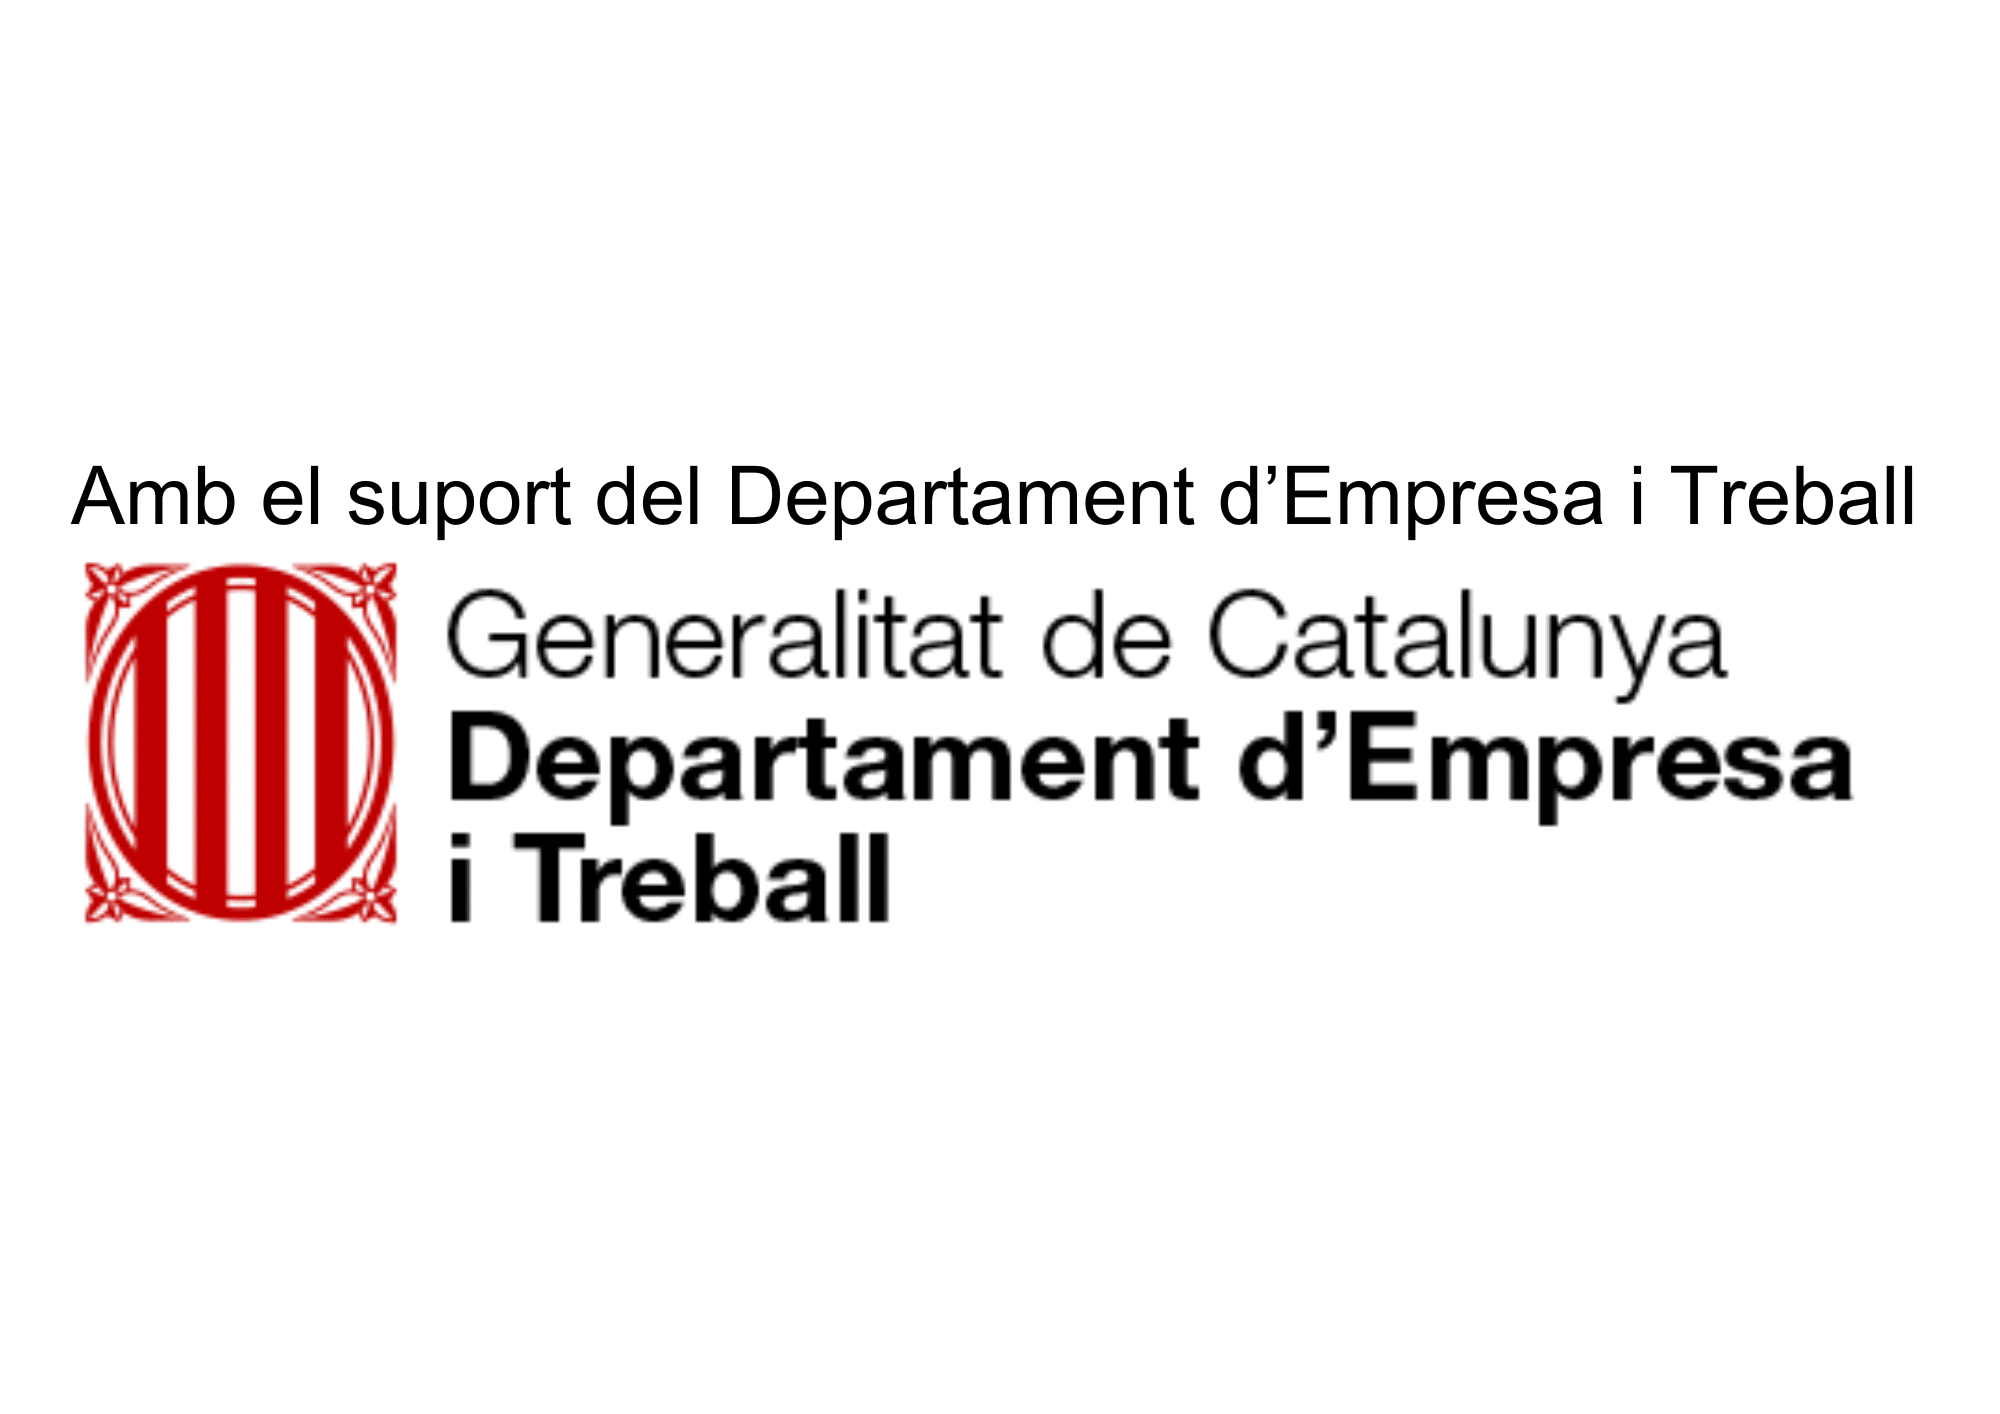 Generalitat de Catalunya. Departament d'empresa i treball